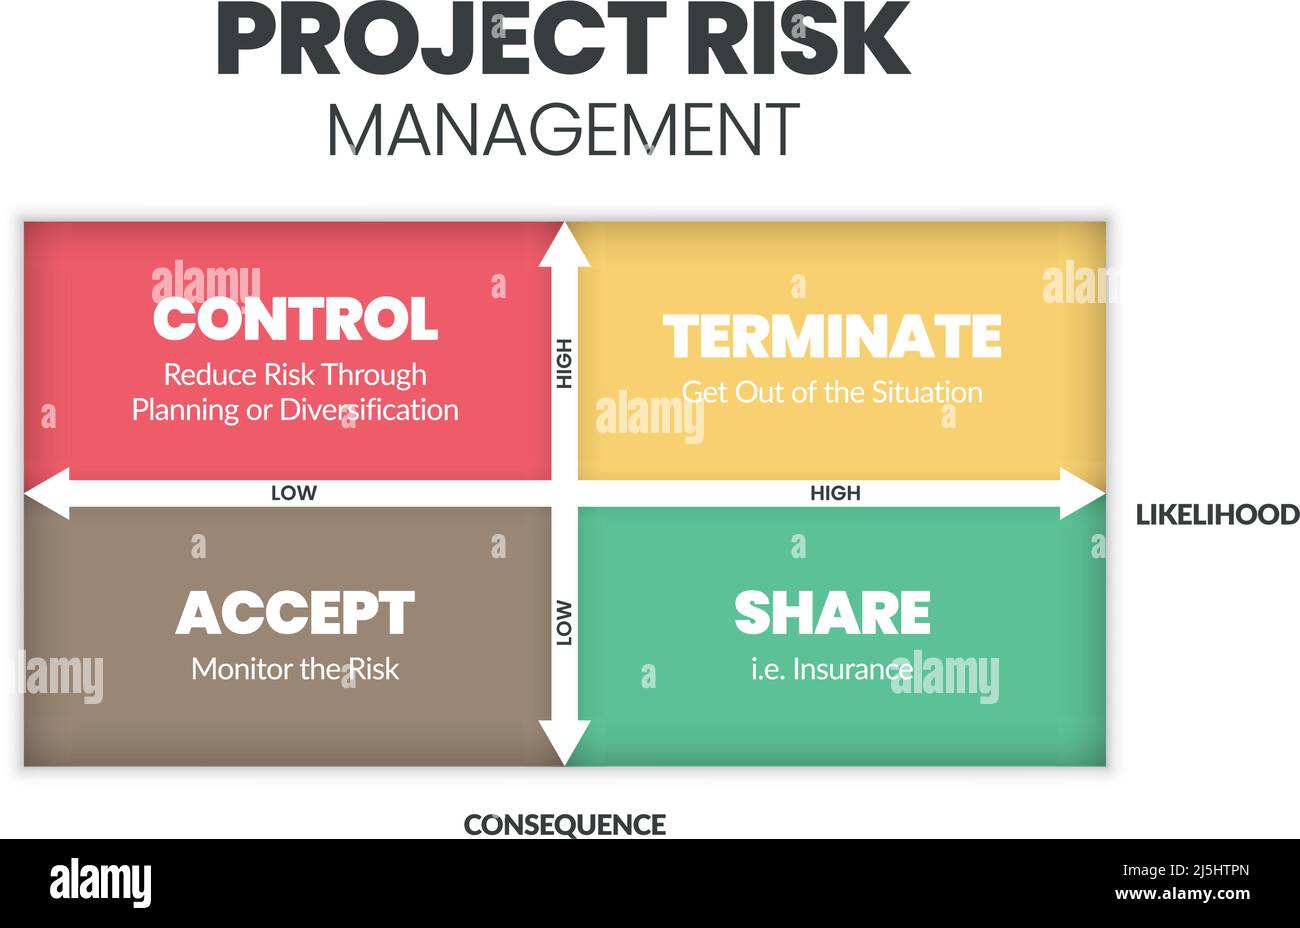 La matrice de gestion des risques du projet est une illustration vectorielle de la probabilité et de la conséquence des dangers dans les projets à des niveaux bas et élevés. Illustration de Vecteur